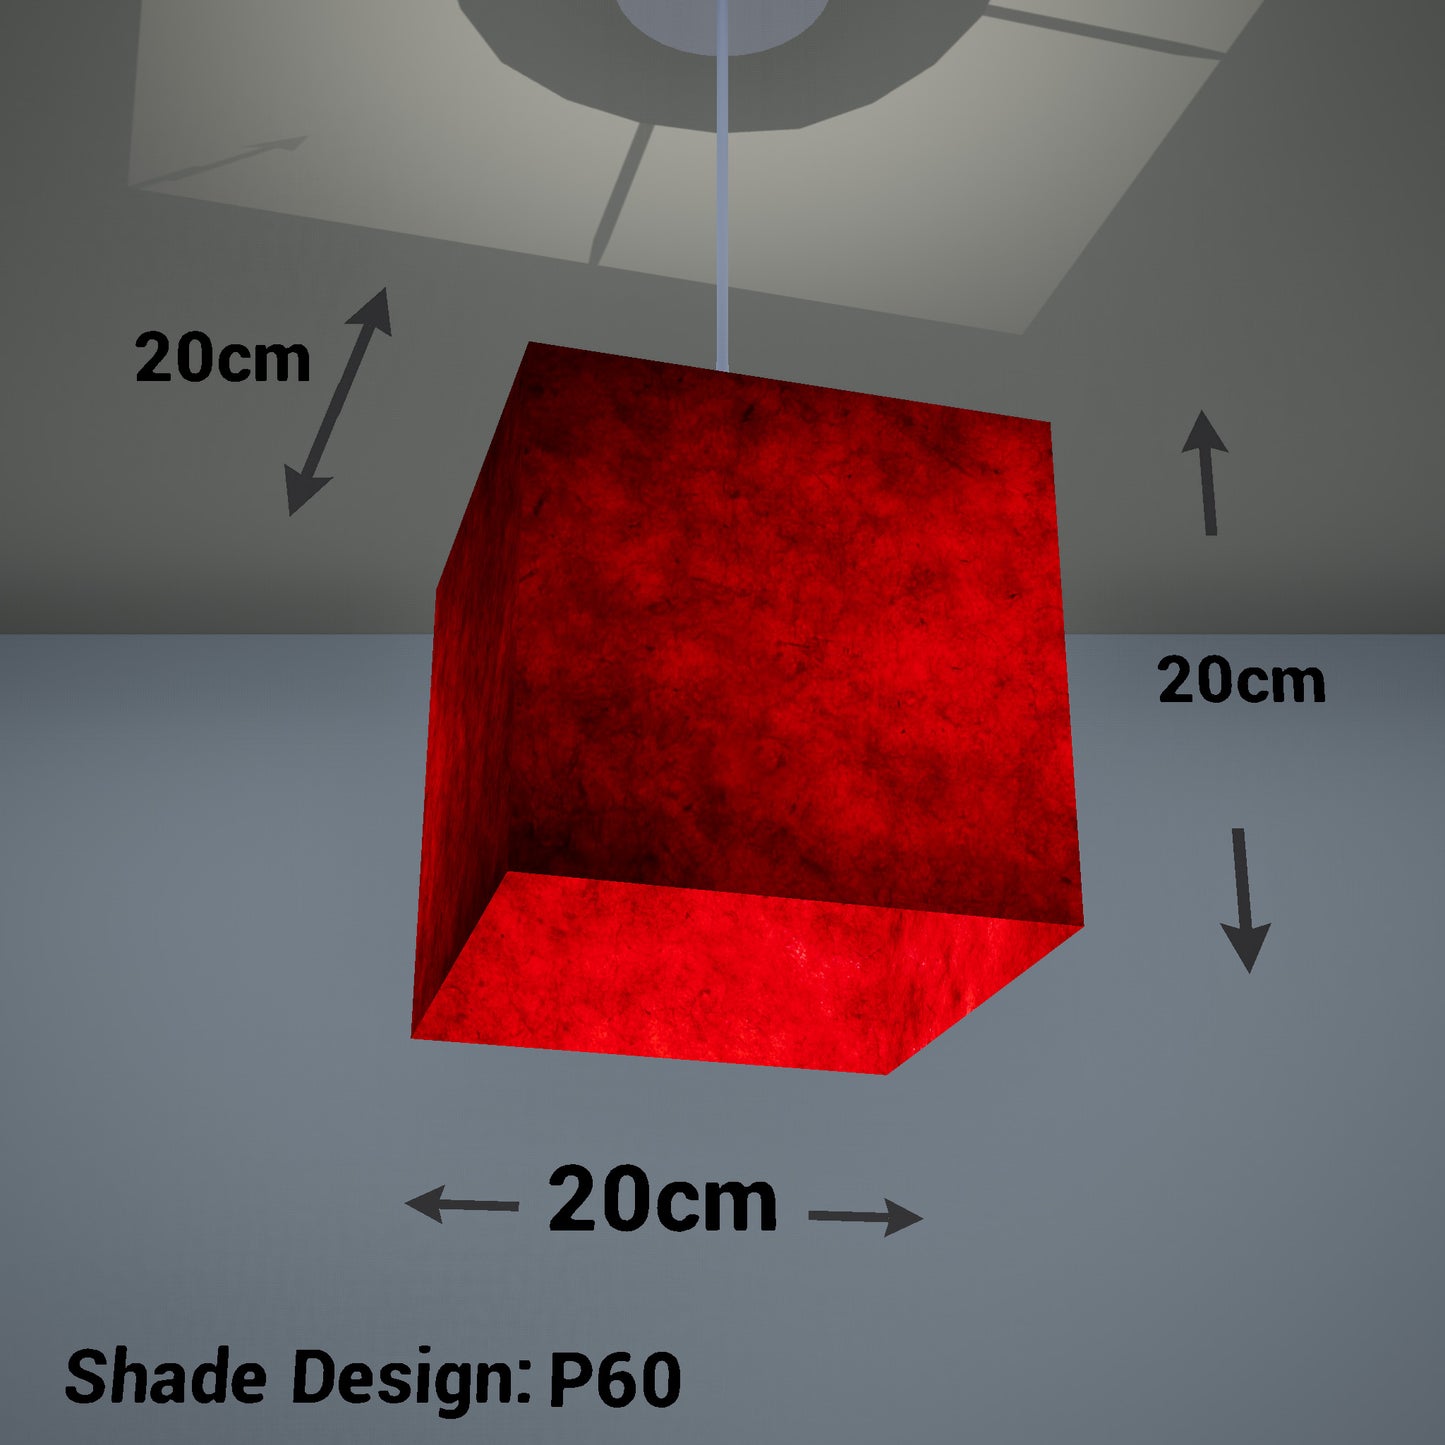 Square Lamp Shade - P60 - Red Lokta, 20cm(w) x 20cm(h) x 20cm(d)